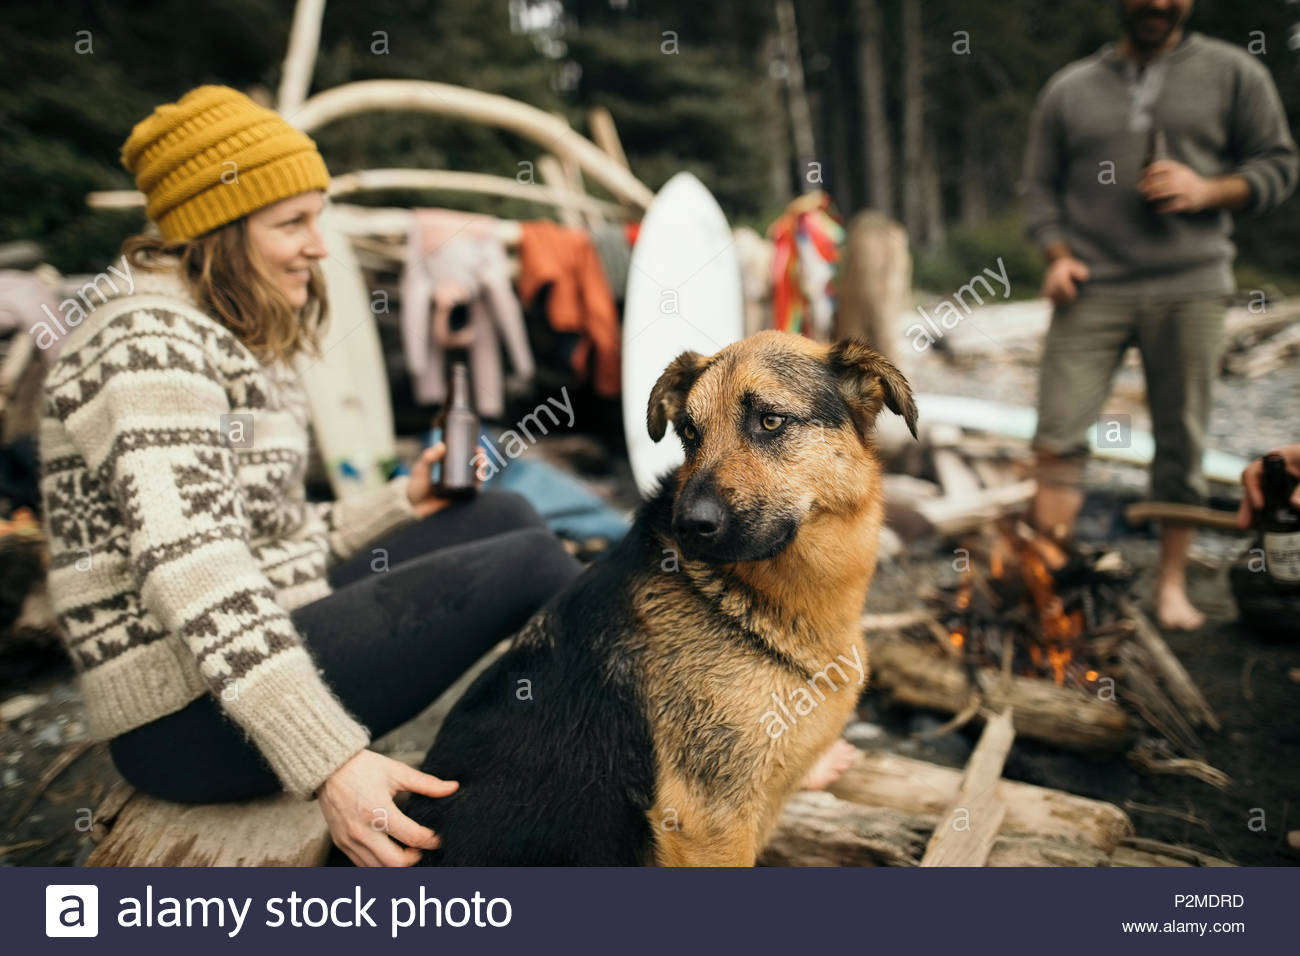 Frau mit Hund genießen Wochenende surfen Getaway, Lagerfeuer Stockfoto